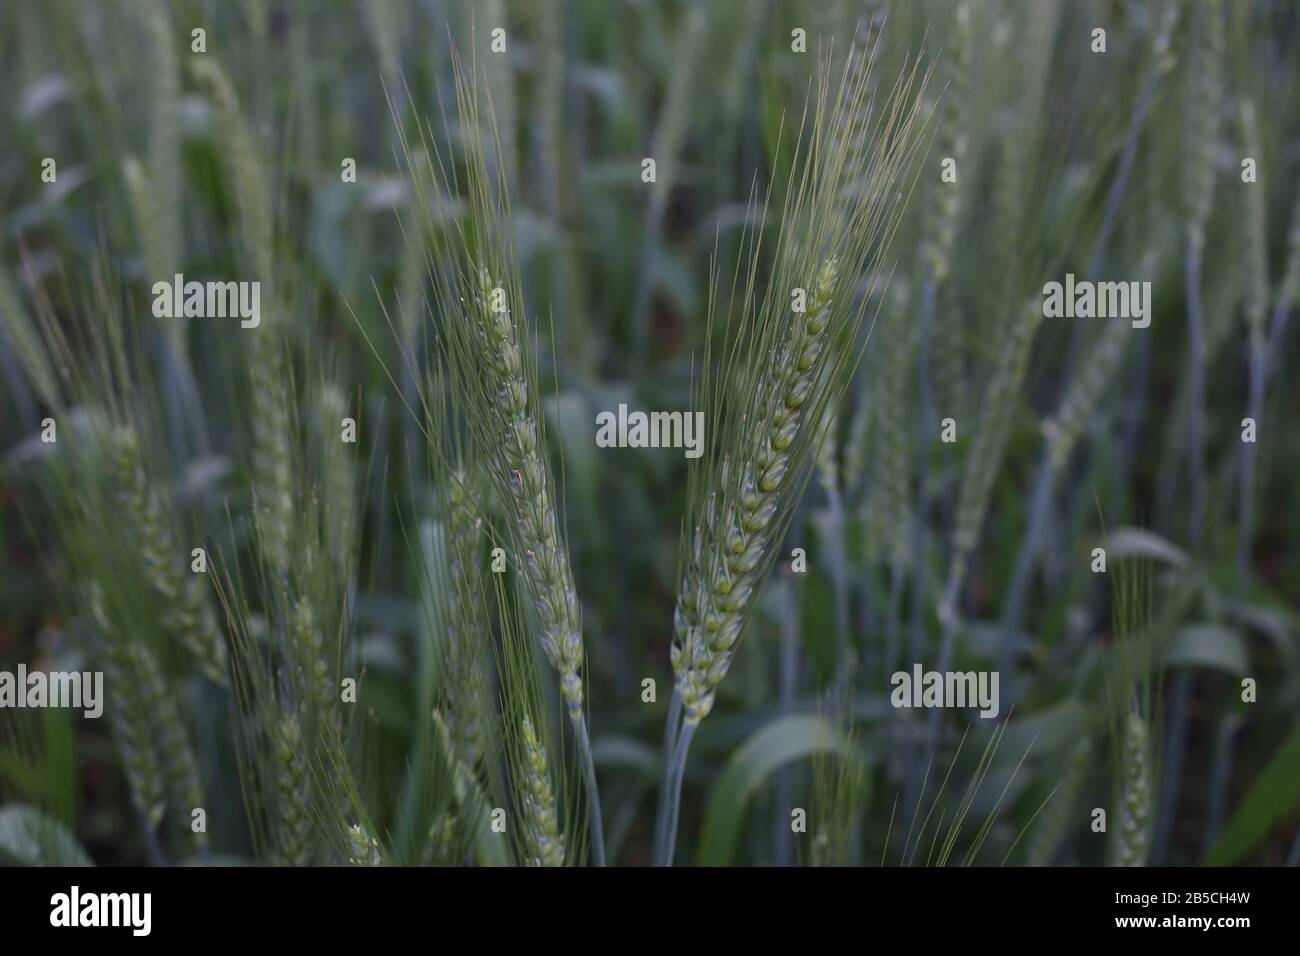 Photography on a Beautiful Sunday green wheat field Stock Photo